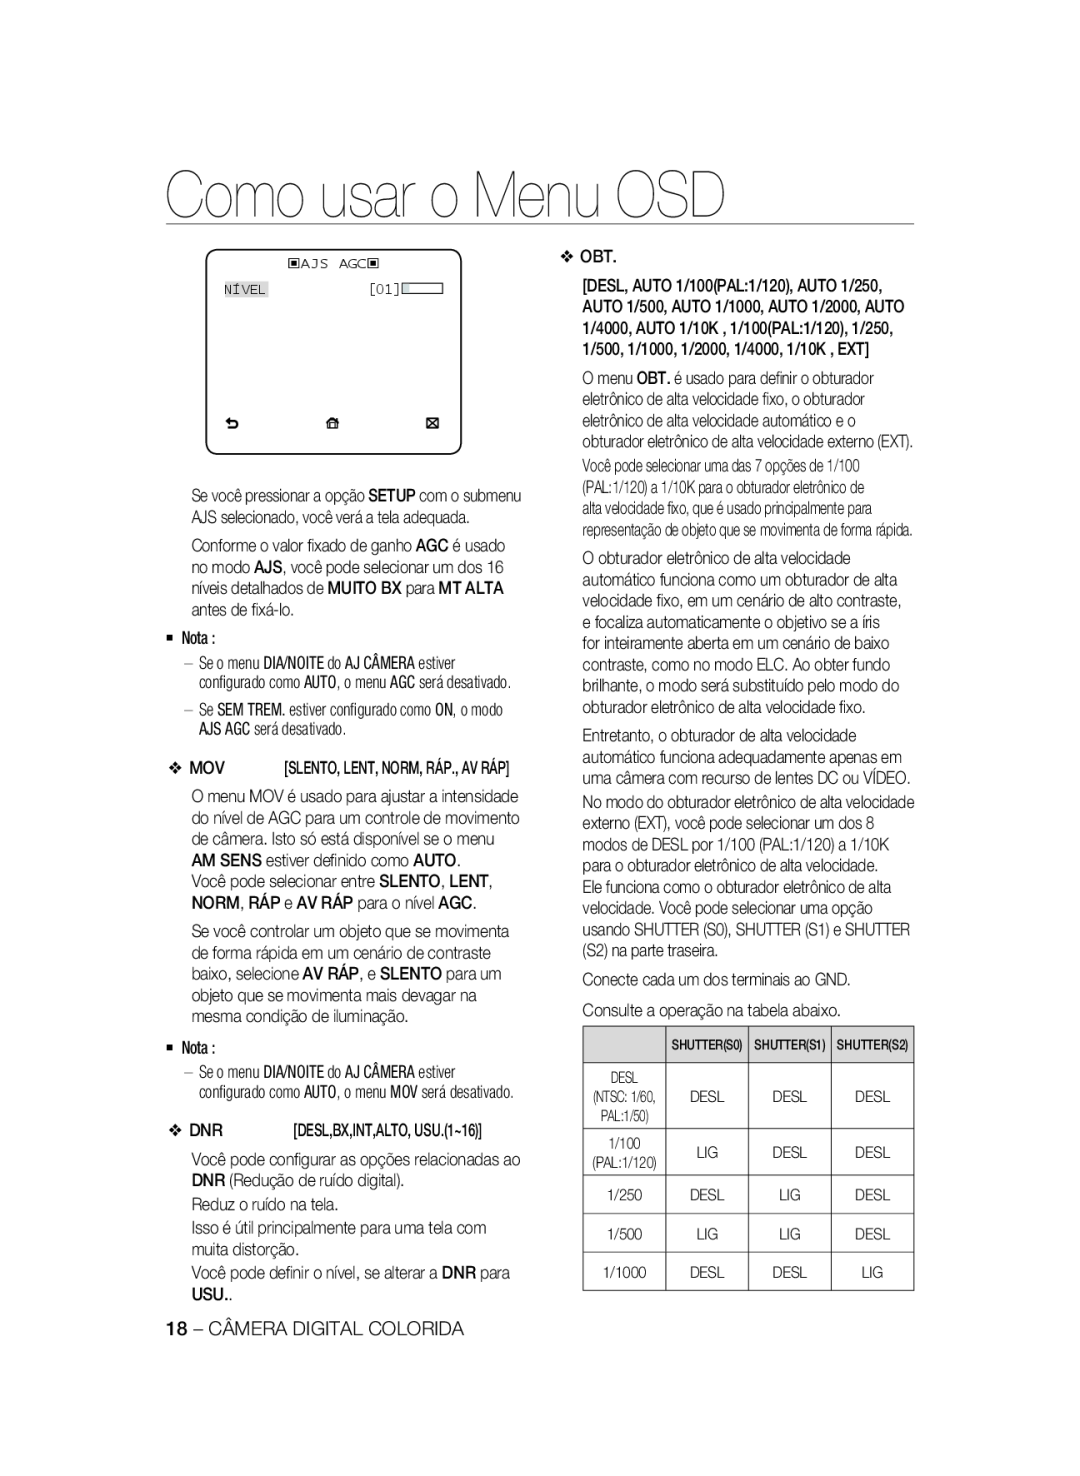 Samsung SCC-A2333P, SCC-A2033P manual Como usar o Menu OSD, ‹AJS AGC‹ NÍVEL01, Desl 